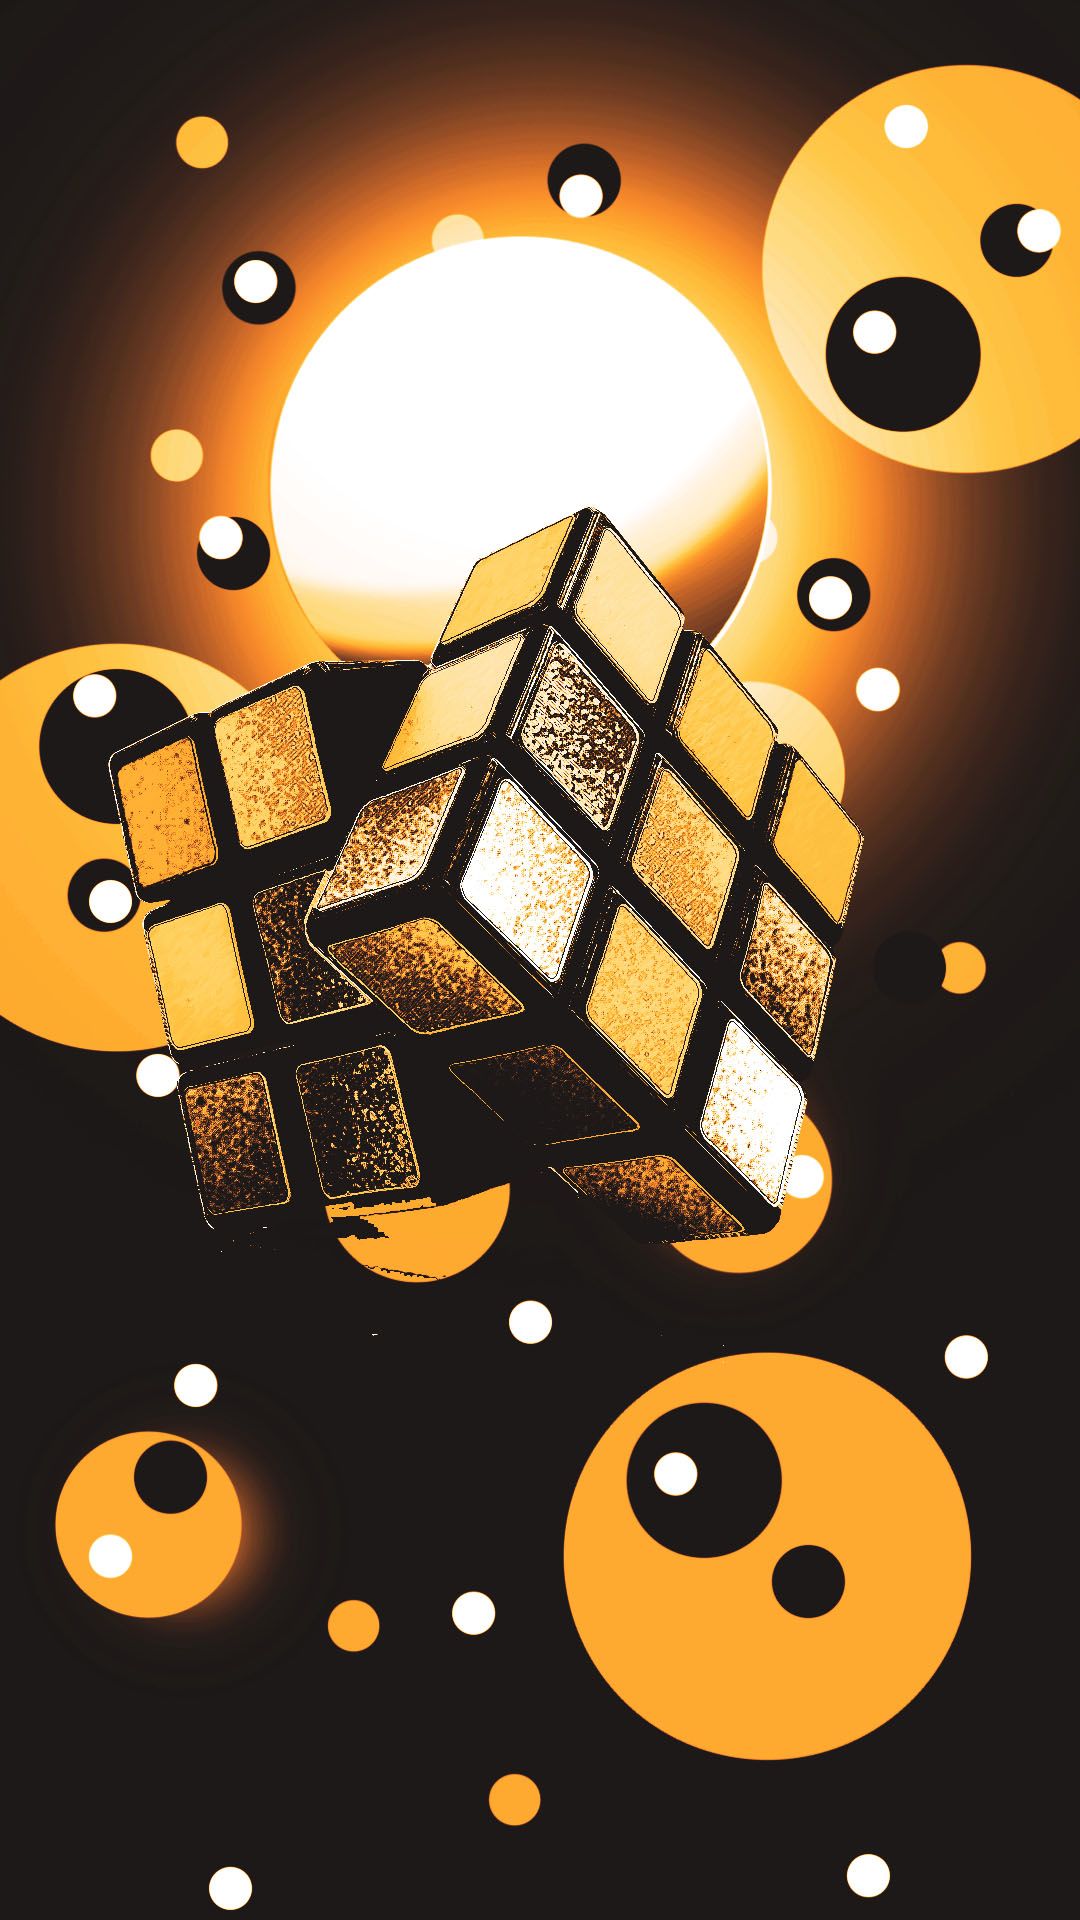 Cubo Rubik 3x3 Wallpaper Mobile Gold by Pceudoart on DeviantArt